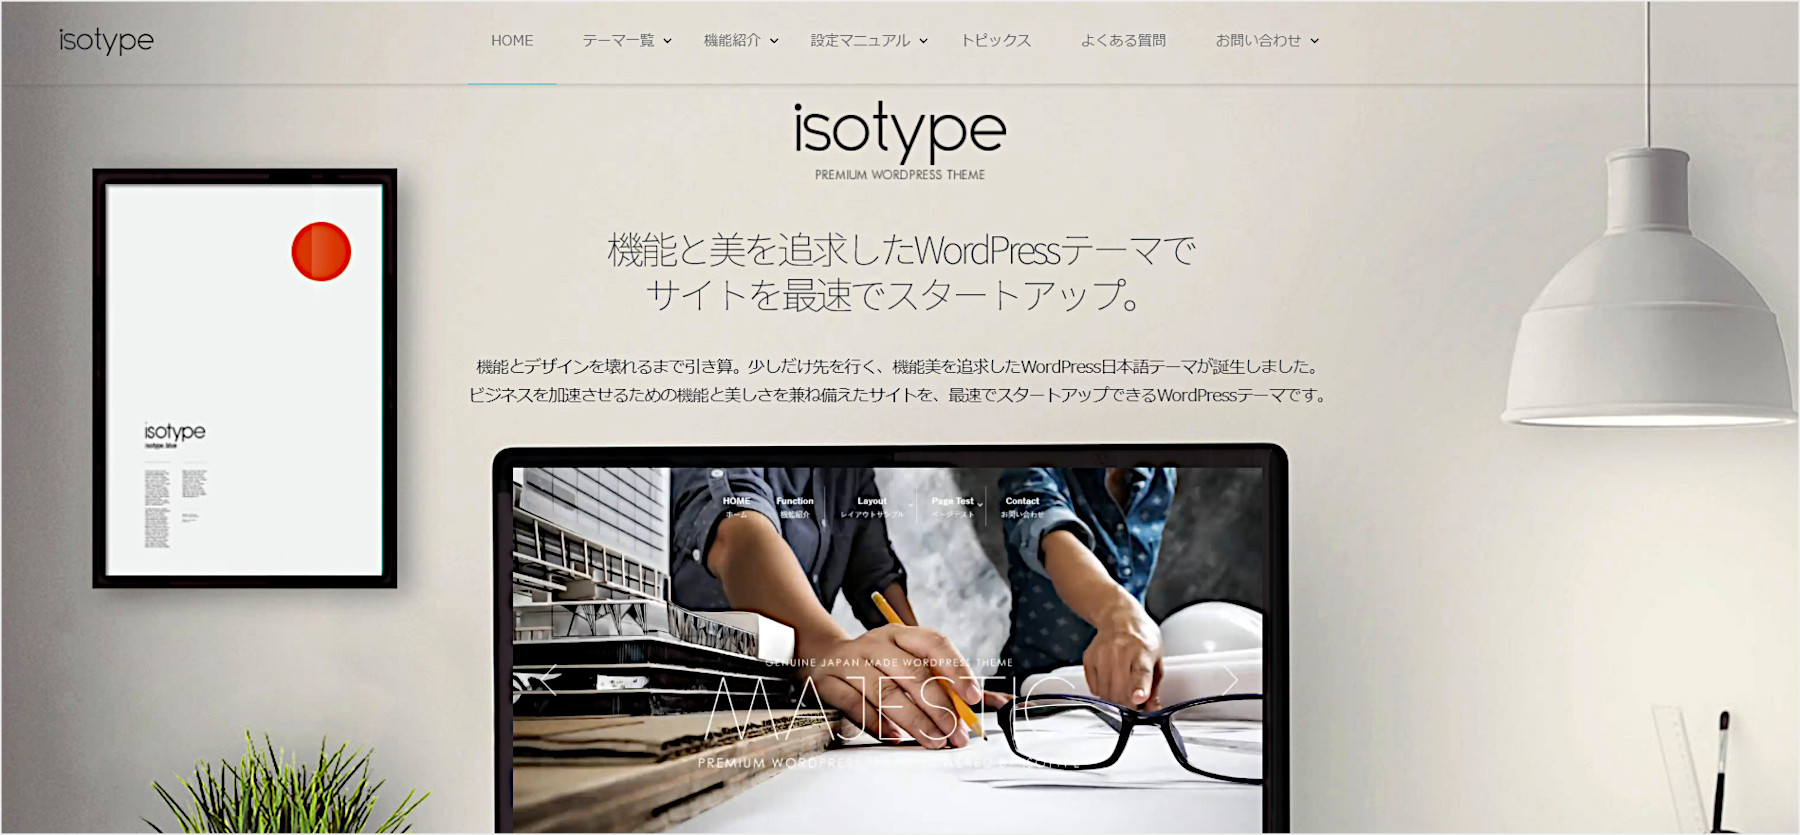 WordPressテーマ「isotype(アイソタイプ)」は機能美とおしゃれなデザインにこだわったテーマ